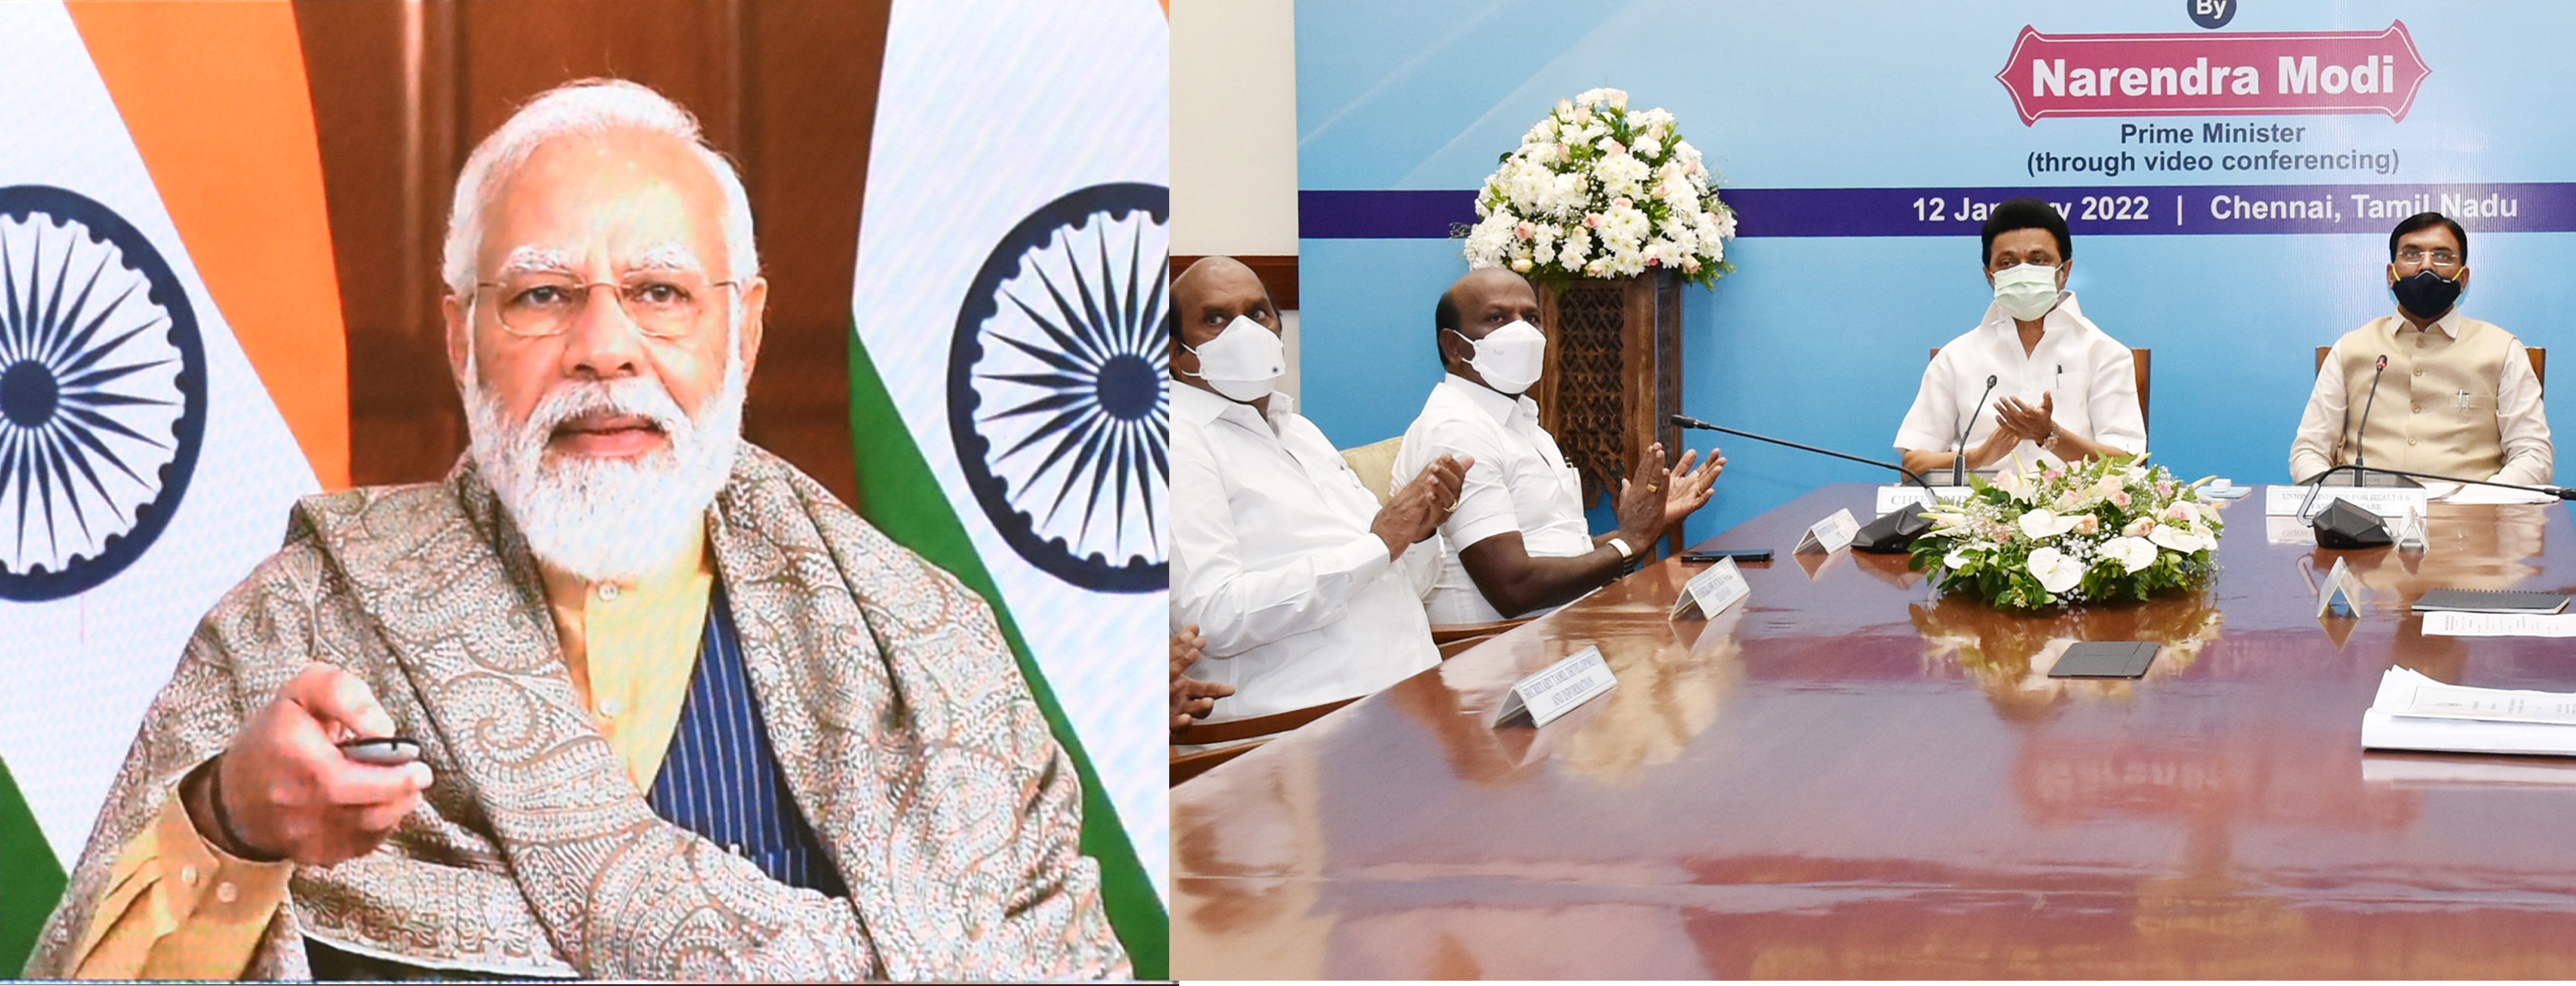 PM नरेंद्र मोदी ने बताया कांग्रेस शासन से क्यों बेहतर है BJP का शासन